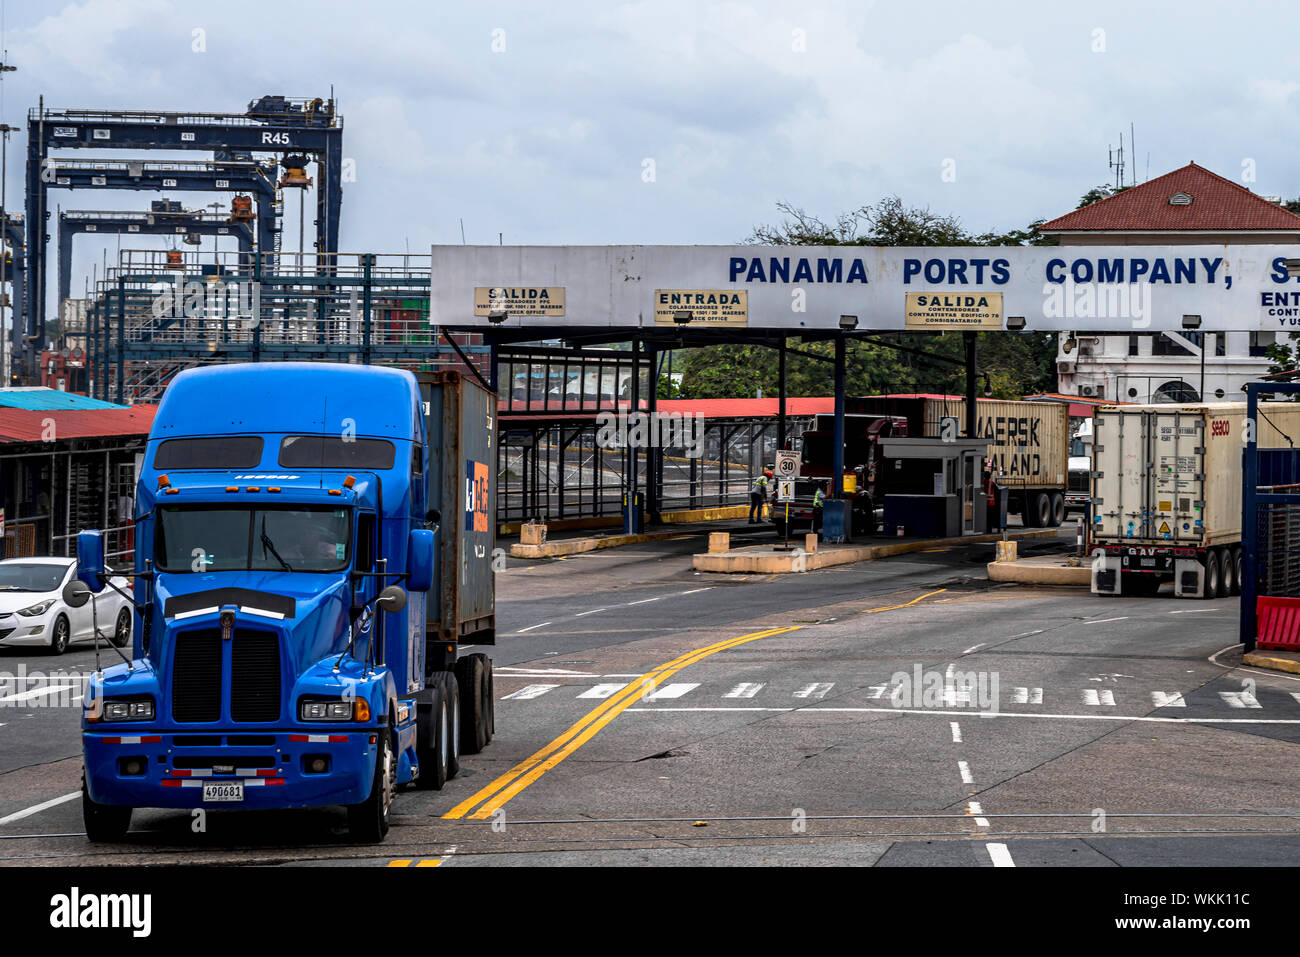 Panama Ports Company, puerto de Balboa entrada Fotografía de stock - Alamy